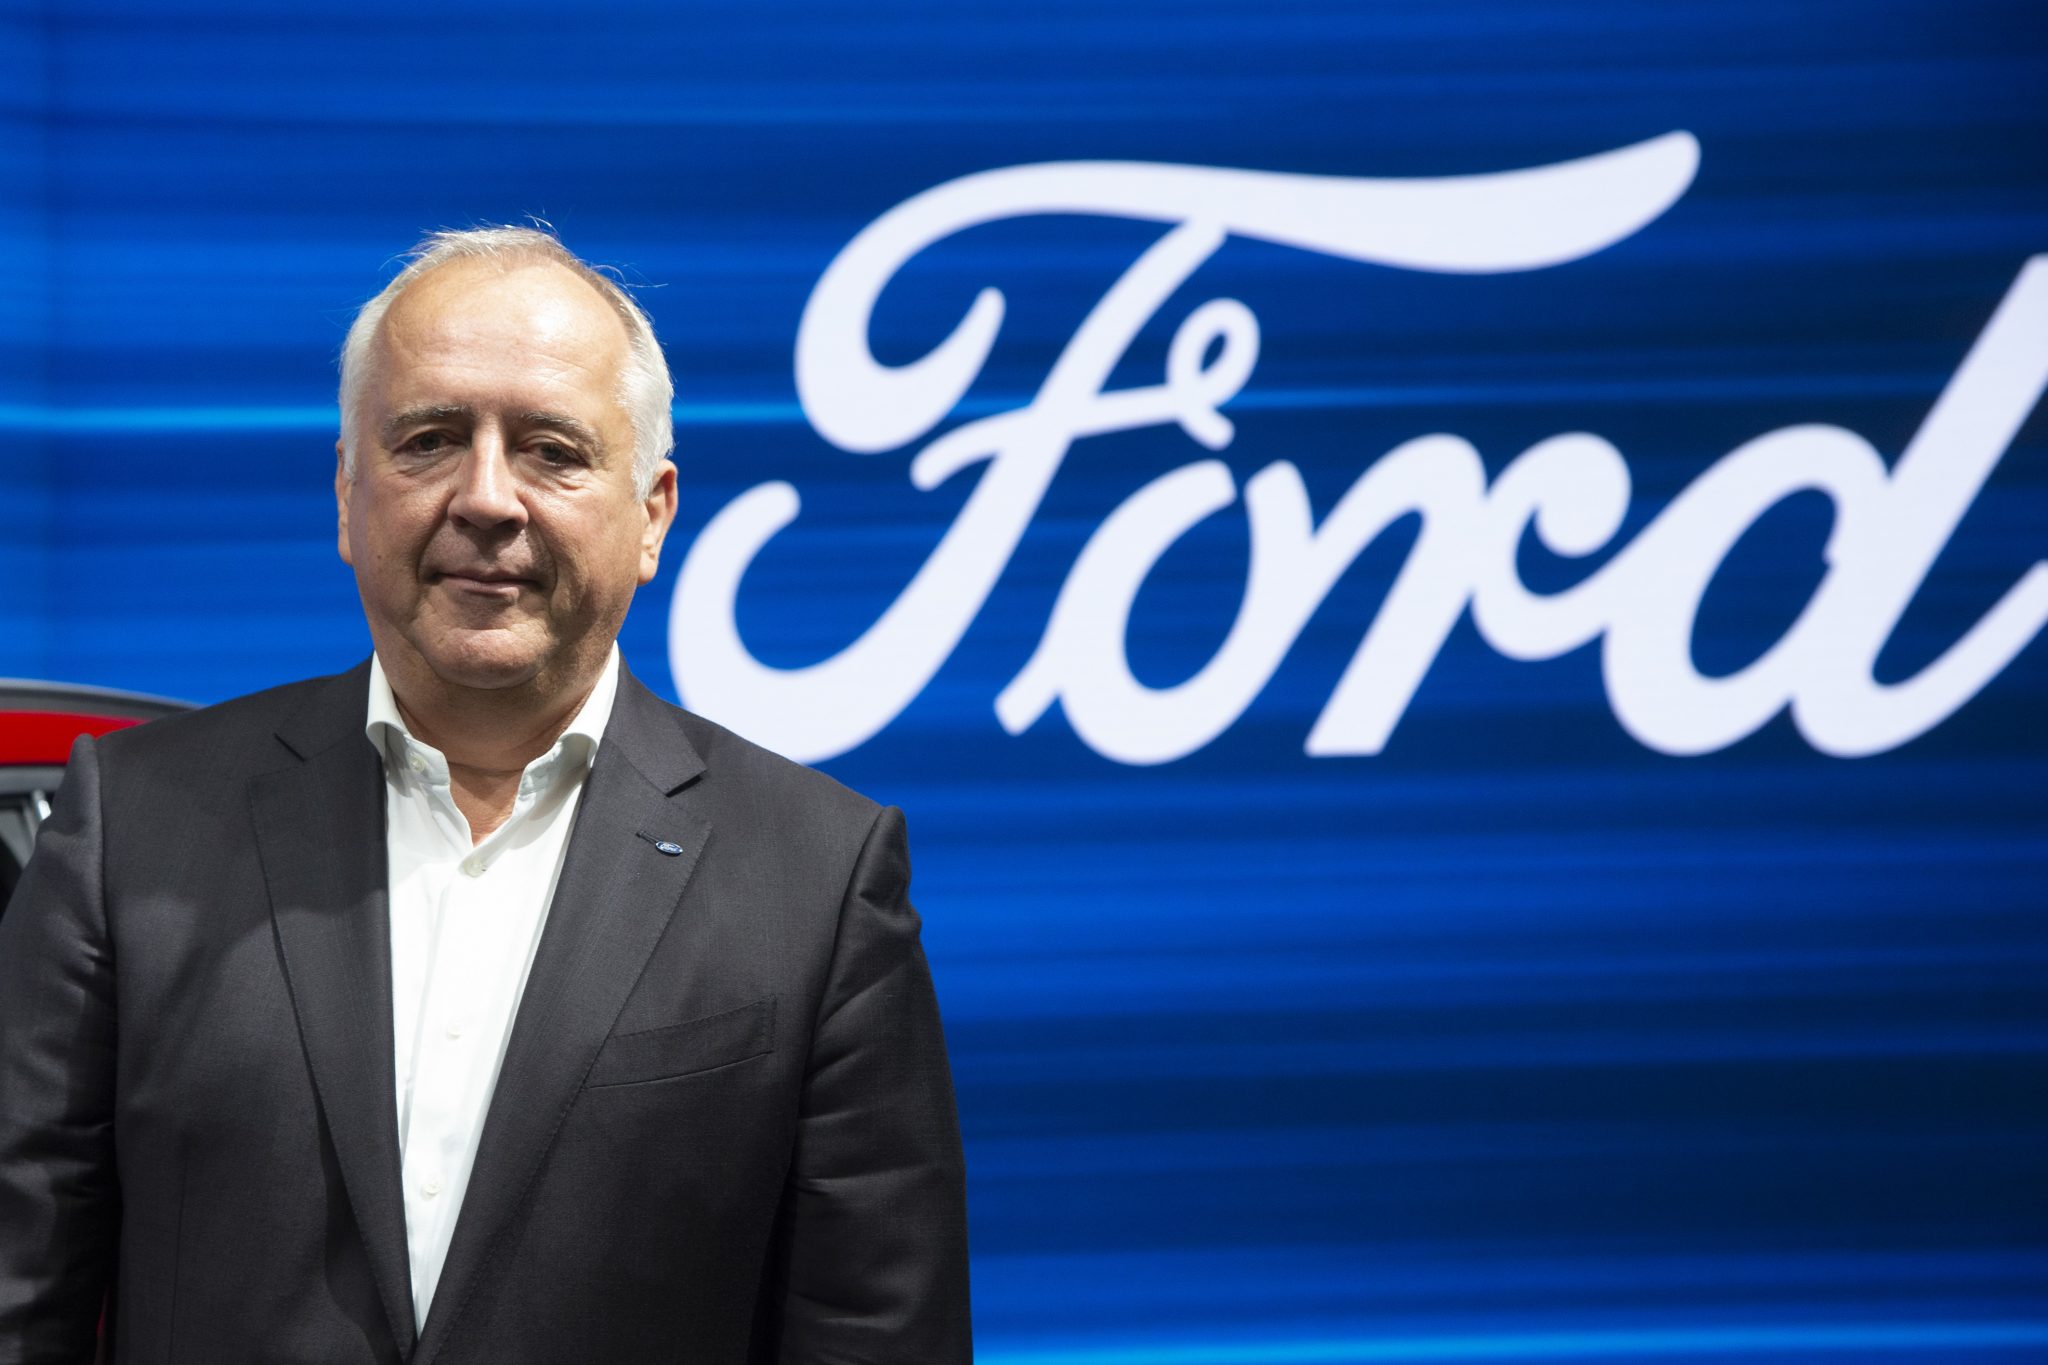 Der Fordchef von Deutschland, Gunnar Herrmann, macht der EU-Kommission Vorwürfe Foto: picture alliance / Sven Simon